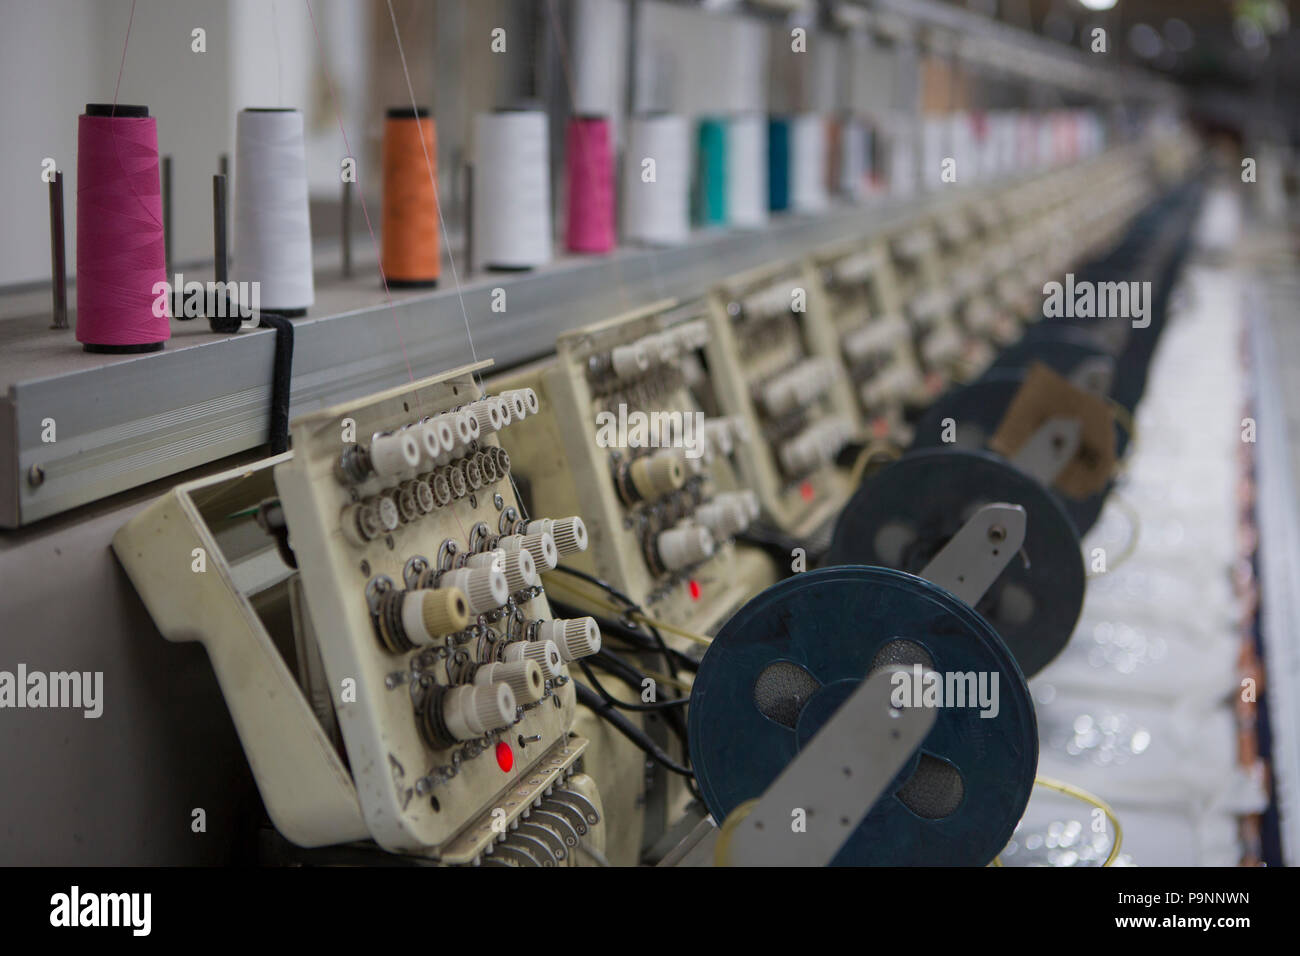 Pericia Ofensa Conversacional Máquinas de coser, imprimir un sequin diseño en una camiseta de algodón bio  en una fábrica, donde el algodón orgánico se utiliza para hacer la ropa,  Indore, India Fotografía de stock -